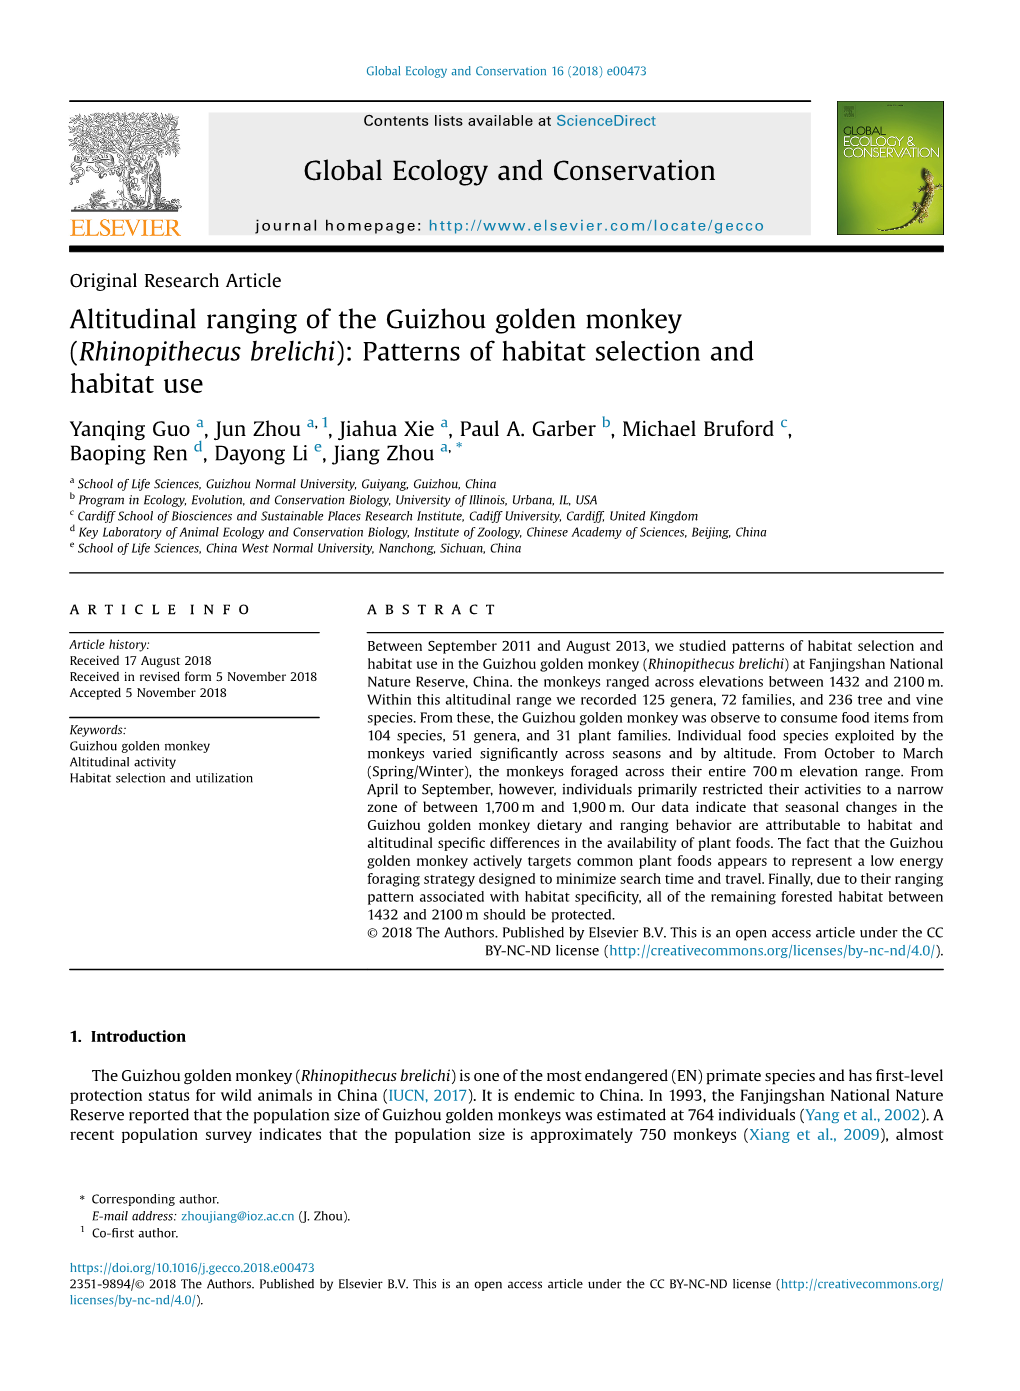 Rhinopithecus Brelichi): Patterns of Habitat Selection and Habitat Use